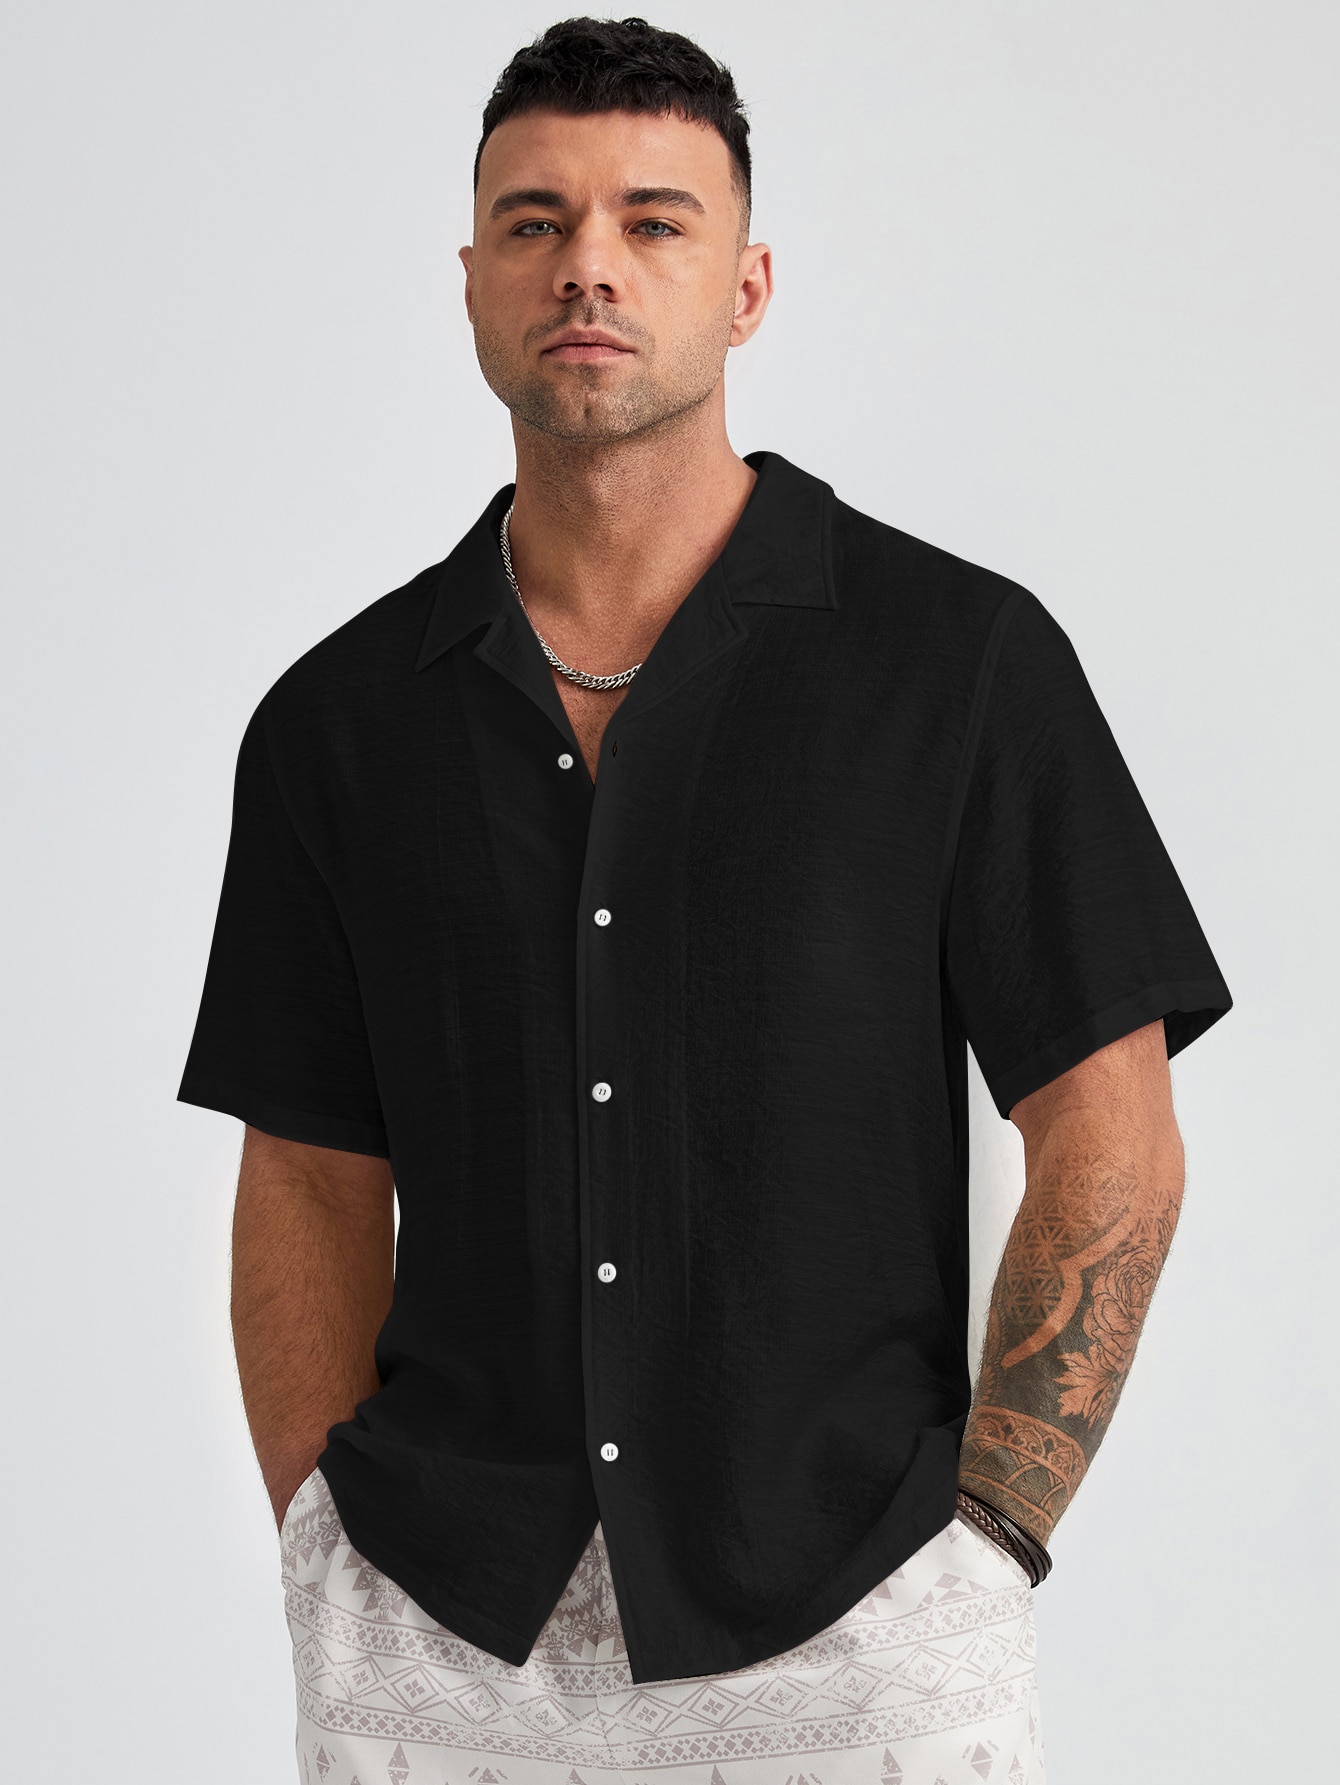 Manfinity Homme Мужская однотонная тканая рубашка больших размеров с коротким рукавом больших размеров, черный